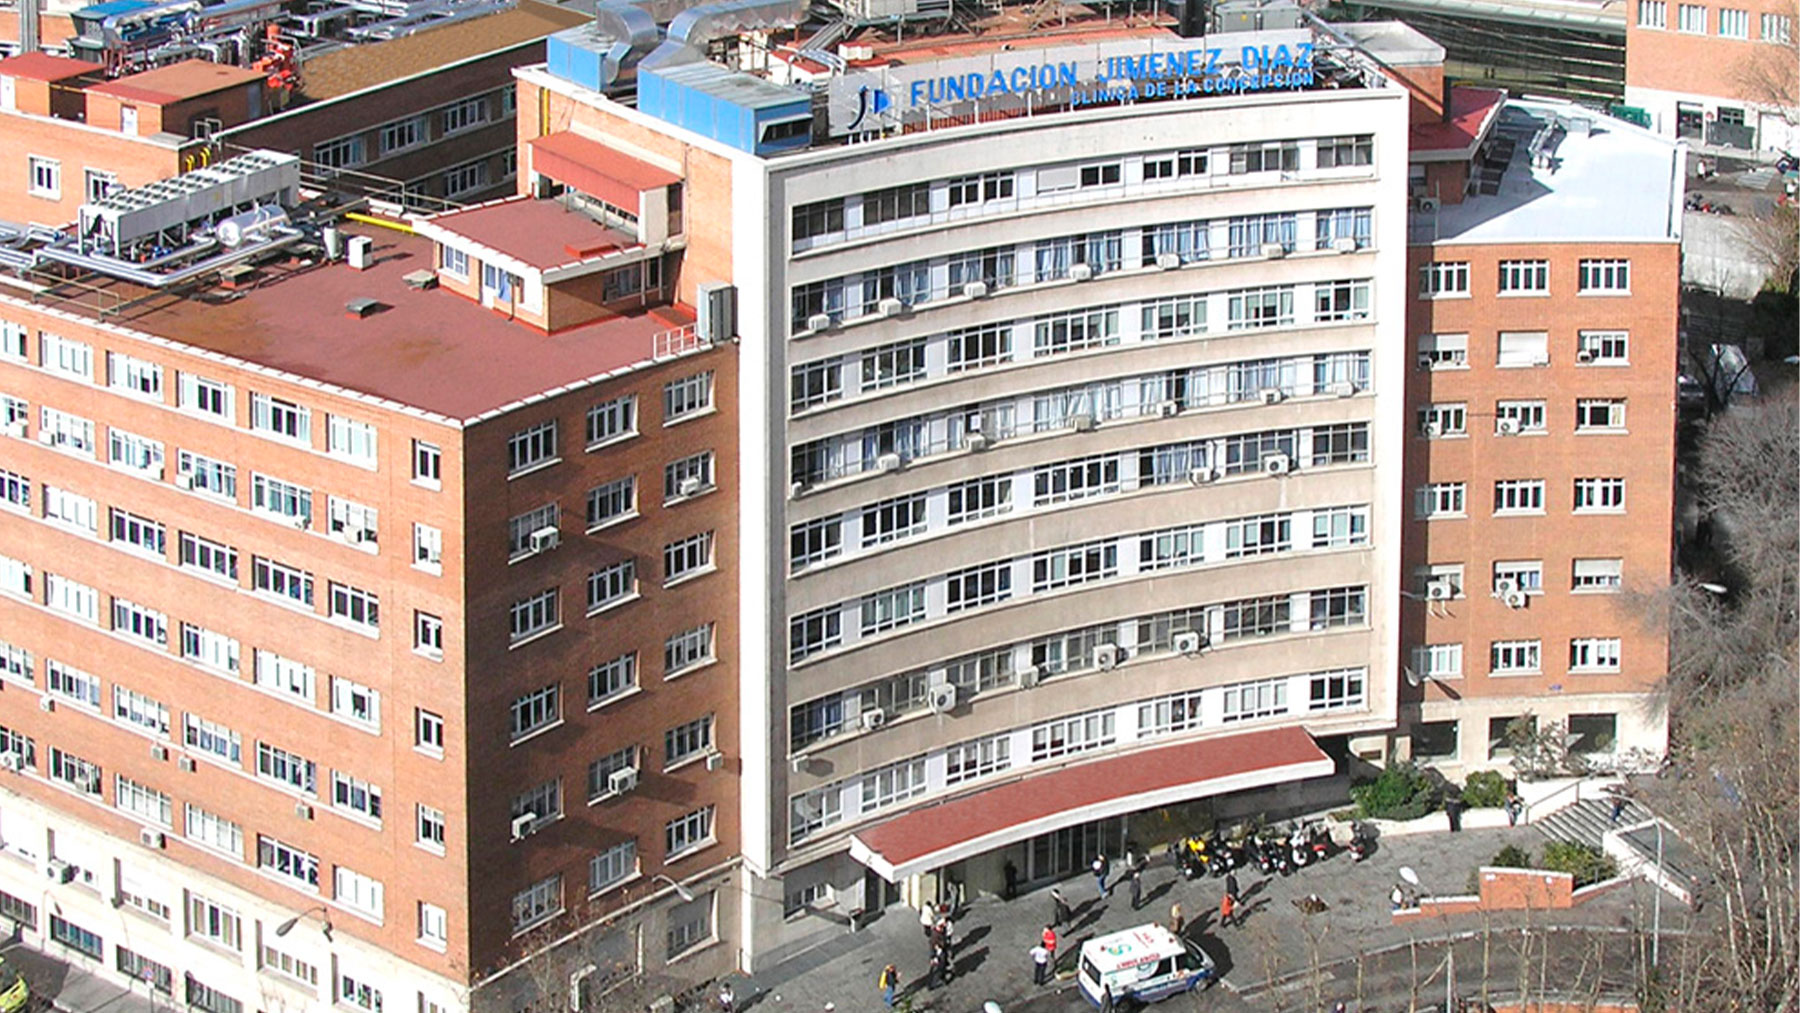 Unidad Odontológica del sueño  Hospital Universitario Fundación Jiménez  Díaz